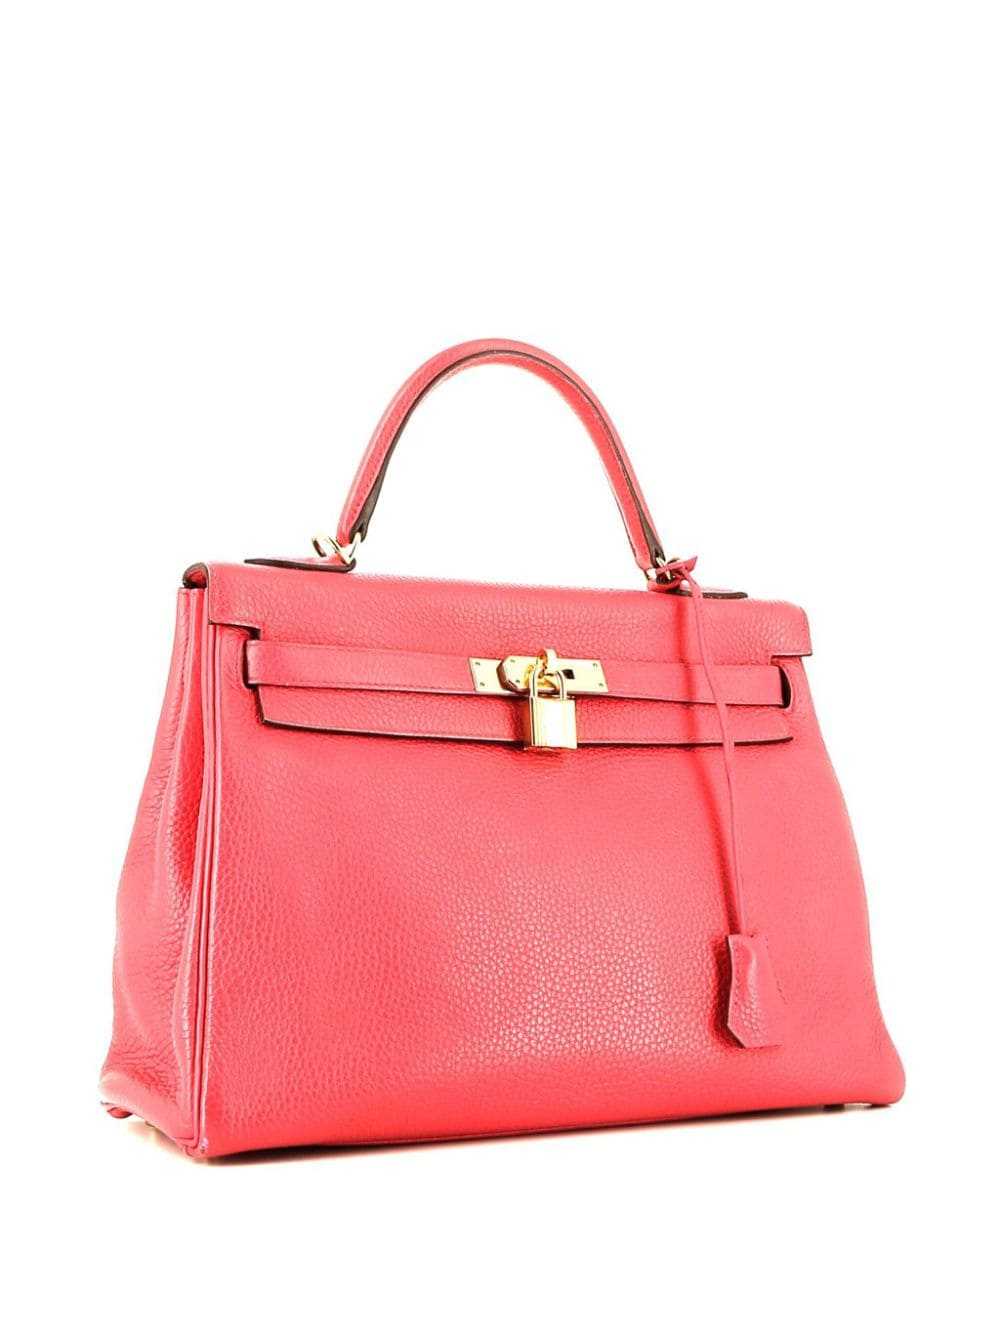 Hermès Pre-Owned Kelly 32 Retourne handbag - Pink - image 3